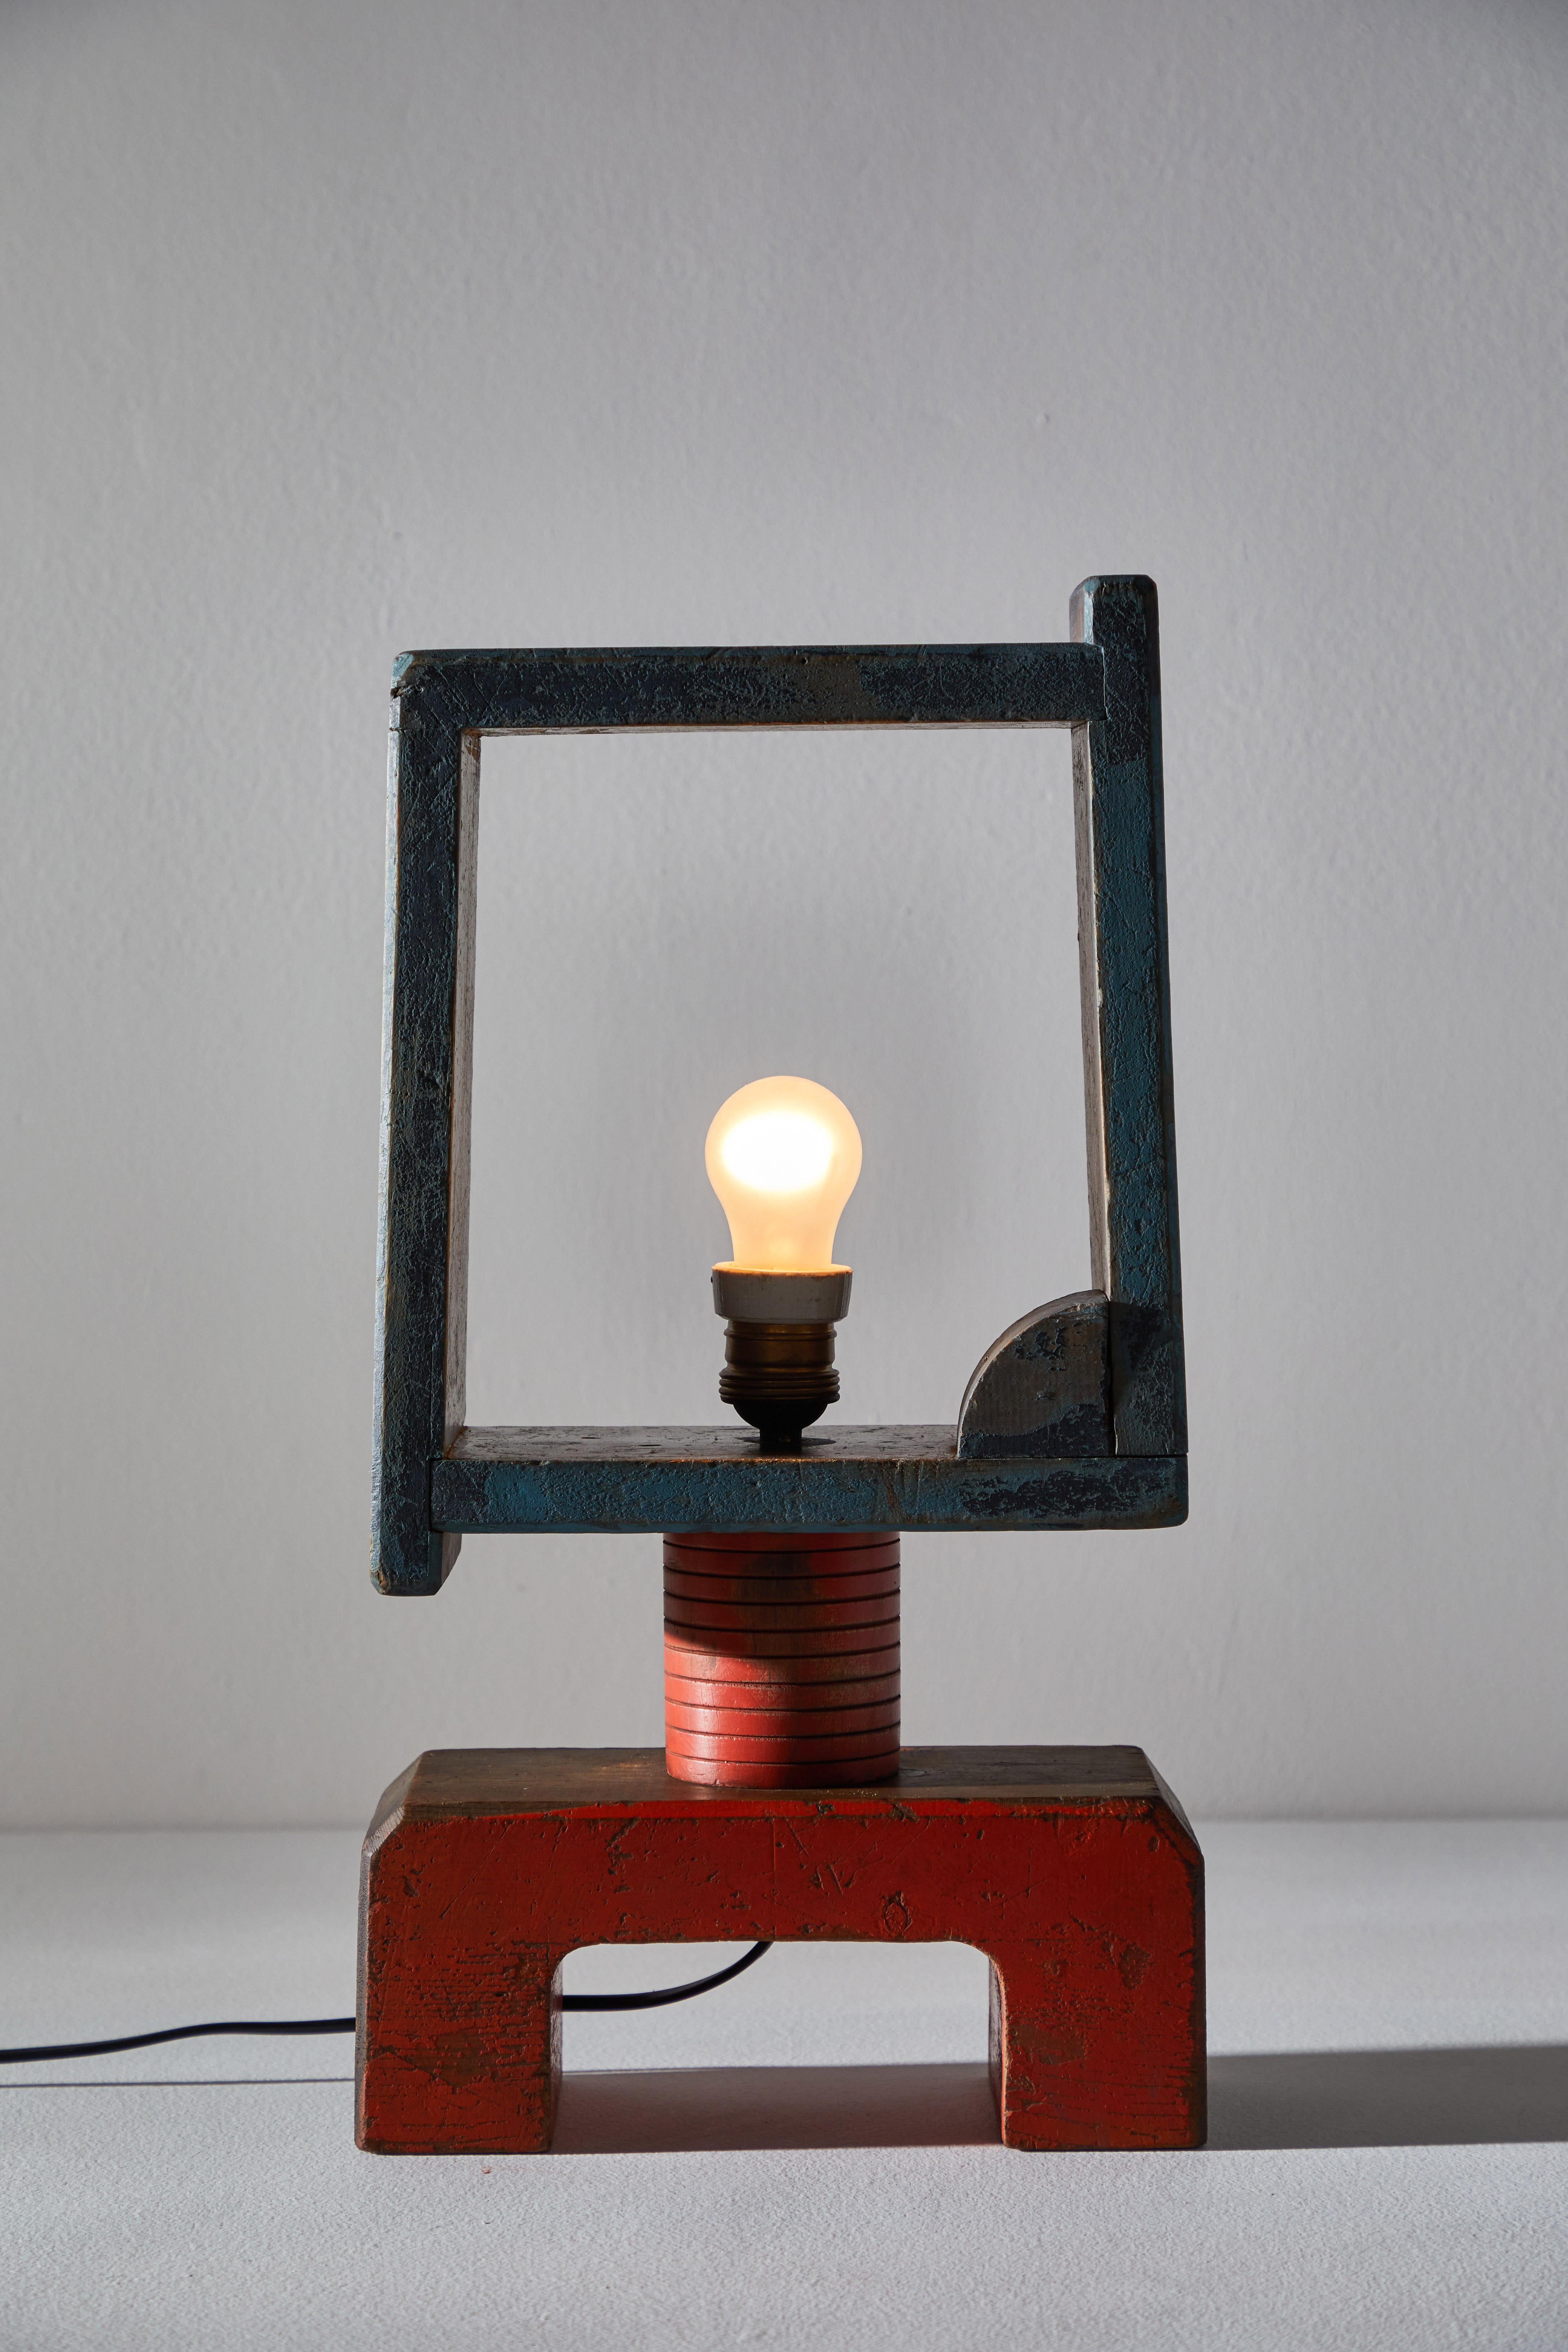 Italienische futuristische Tischlampe. Entworfen und hergestellt in Italien, ca. 1930er Jahre. Handbemaltes Holz, originales Kabel, neu verkabelt für US-Steckdosen. Der Schirm ist um 360 Grad drehbar. Kundenspezifische Innenschattierung auf Anfrage